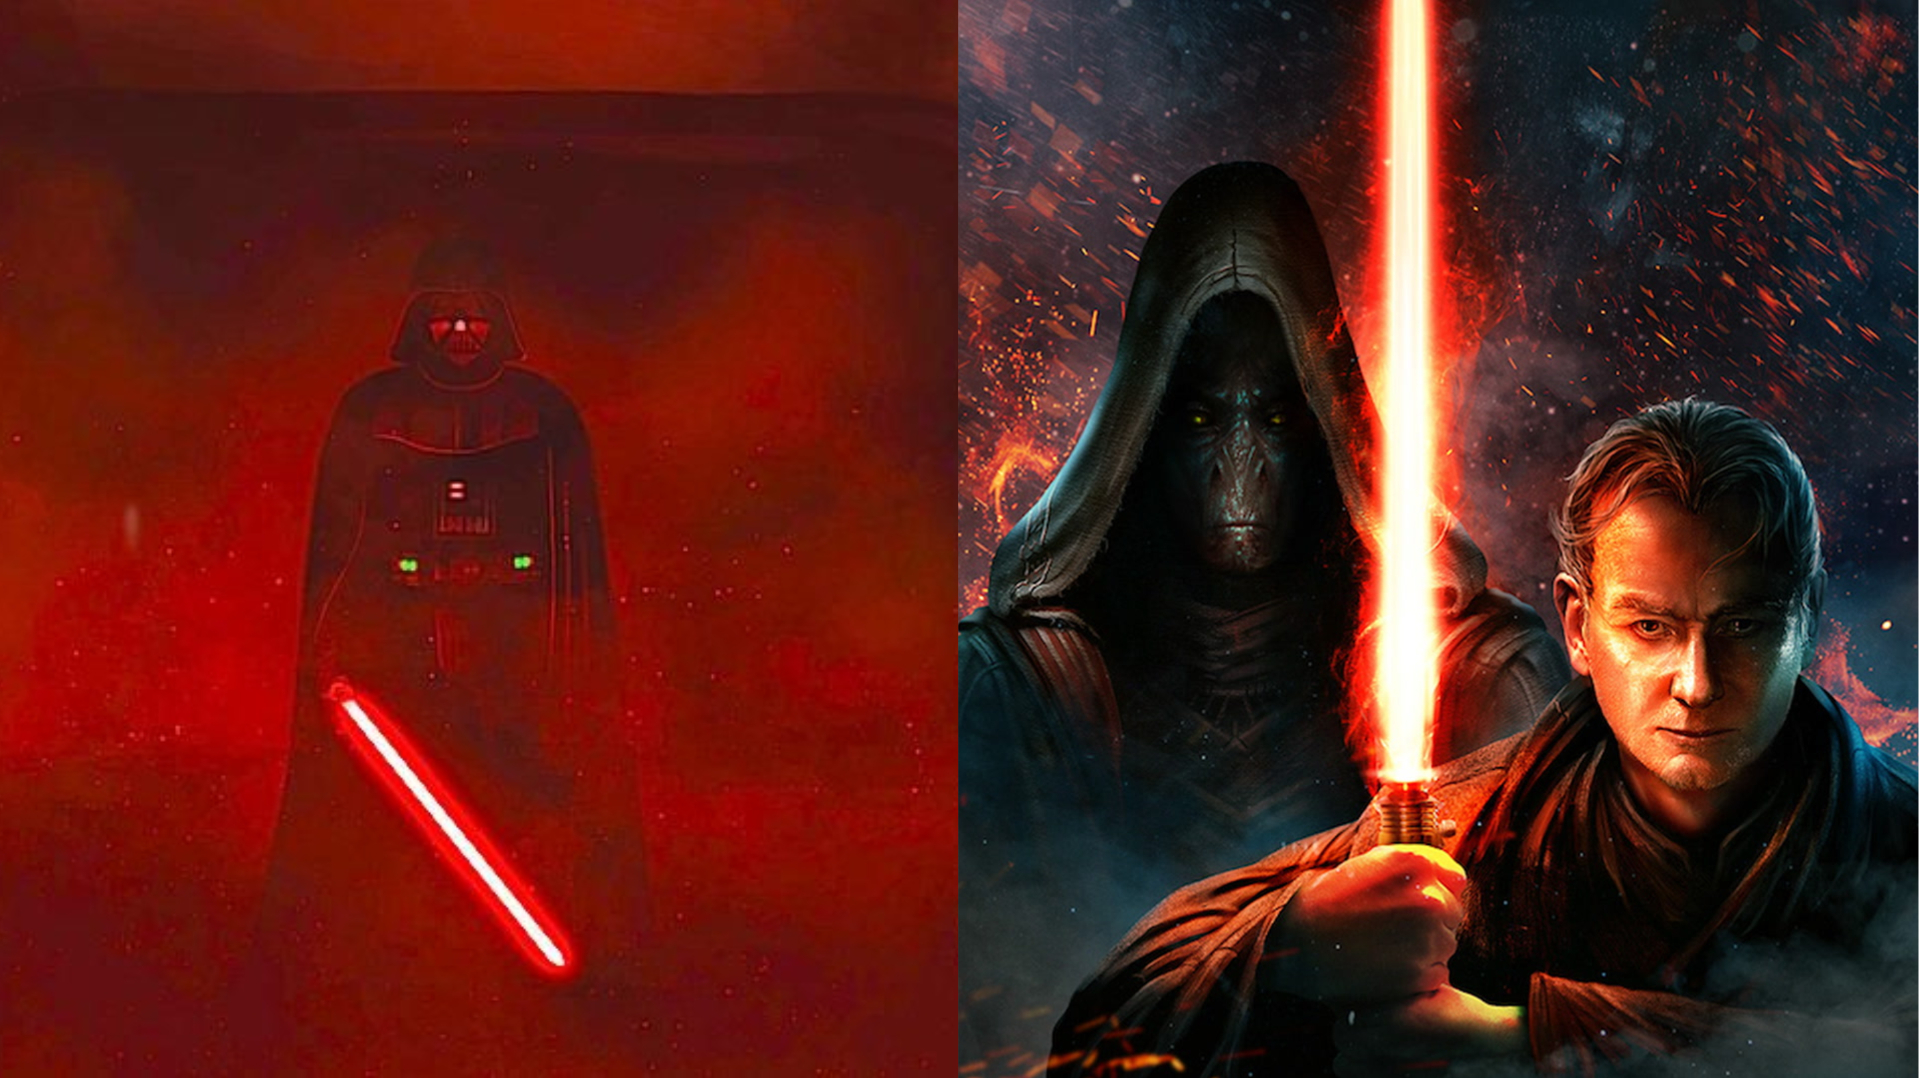 Imagem dividida de Darth Vader e Palpatine com seu mentor Plagueis atrás dele.